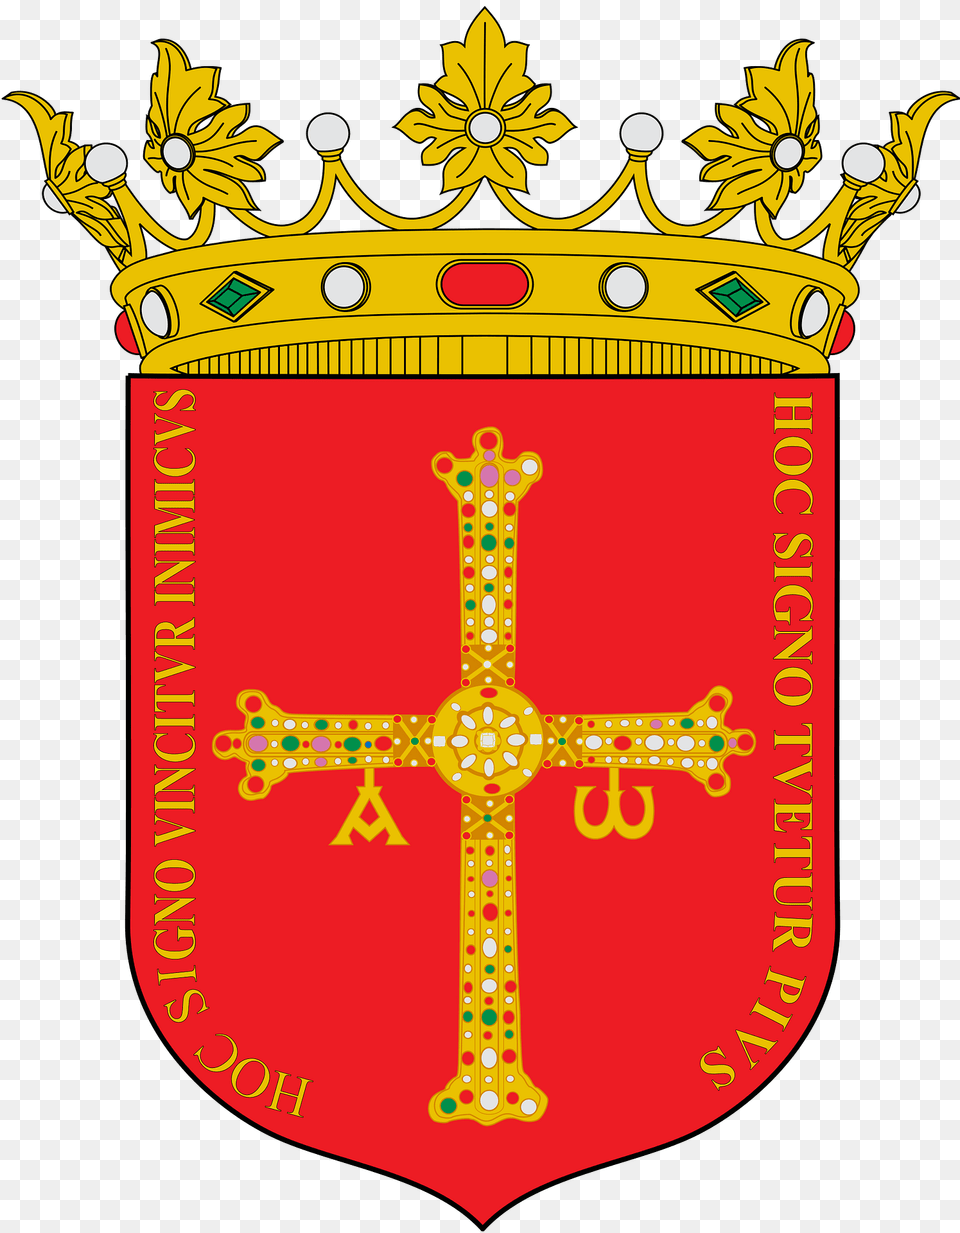 Escudo Del Reino De Asturias Modelo De La Bandera Clipart, Armor, Shield, Dynamite, Weapon Png